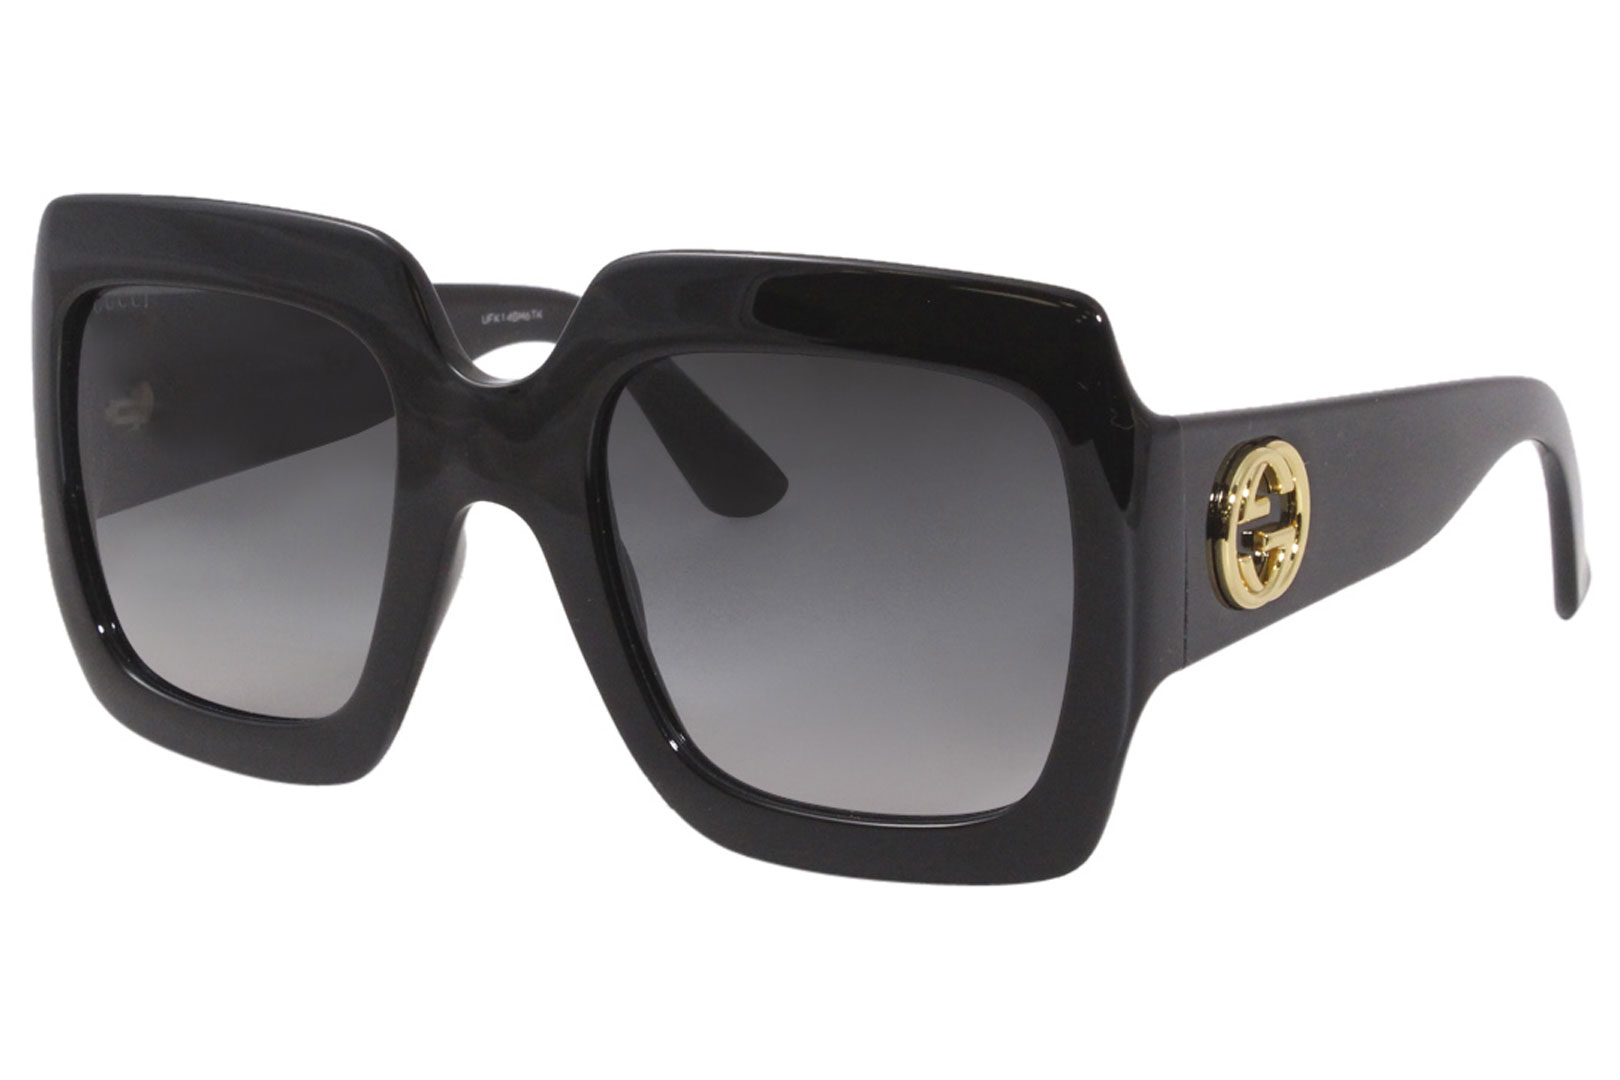 Gucci Sunglasses Urban Collection GG0053S 001 Black-Gold/Gray Gradient